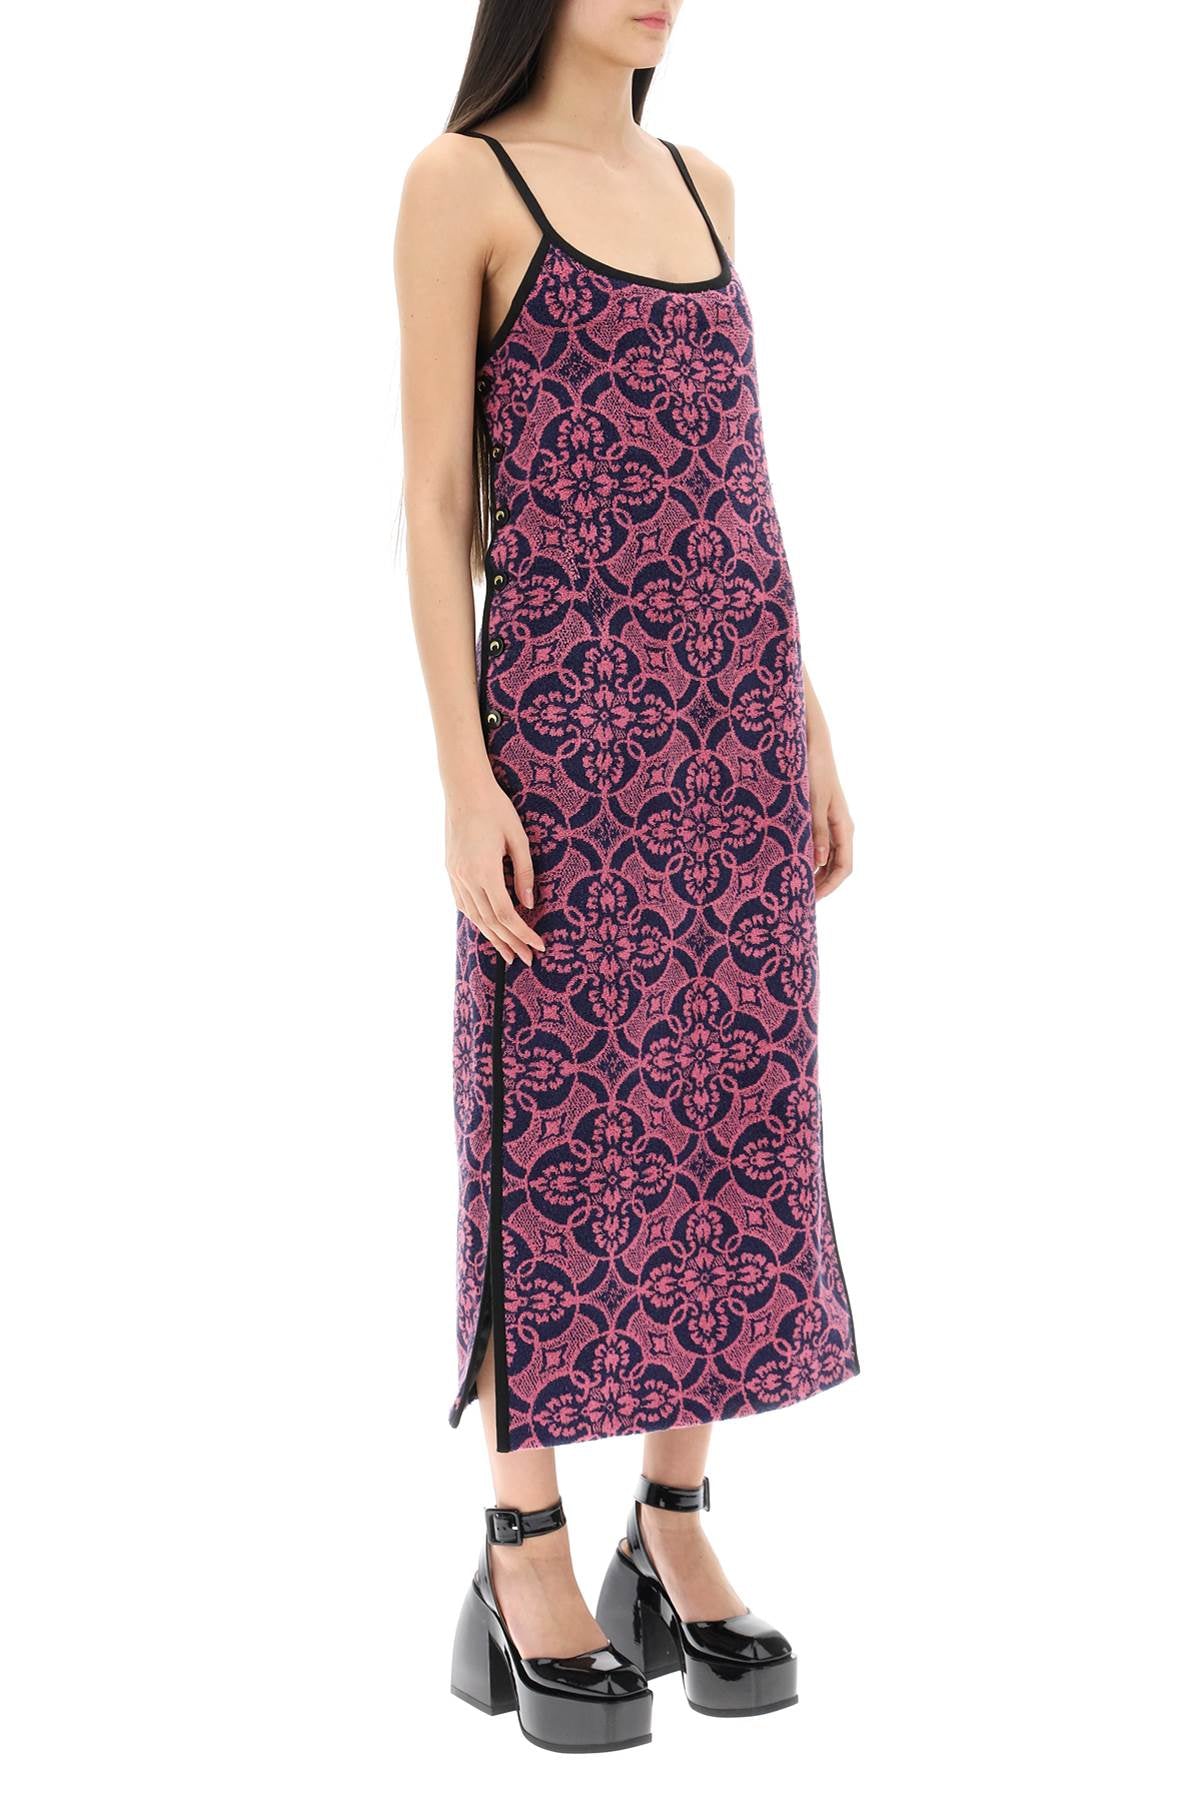 فستان ناعم مع تصميم منشفة شرقية في القطن الناعم